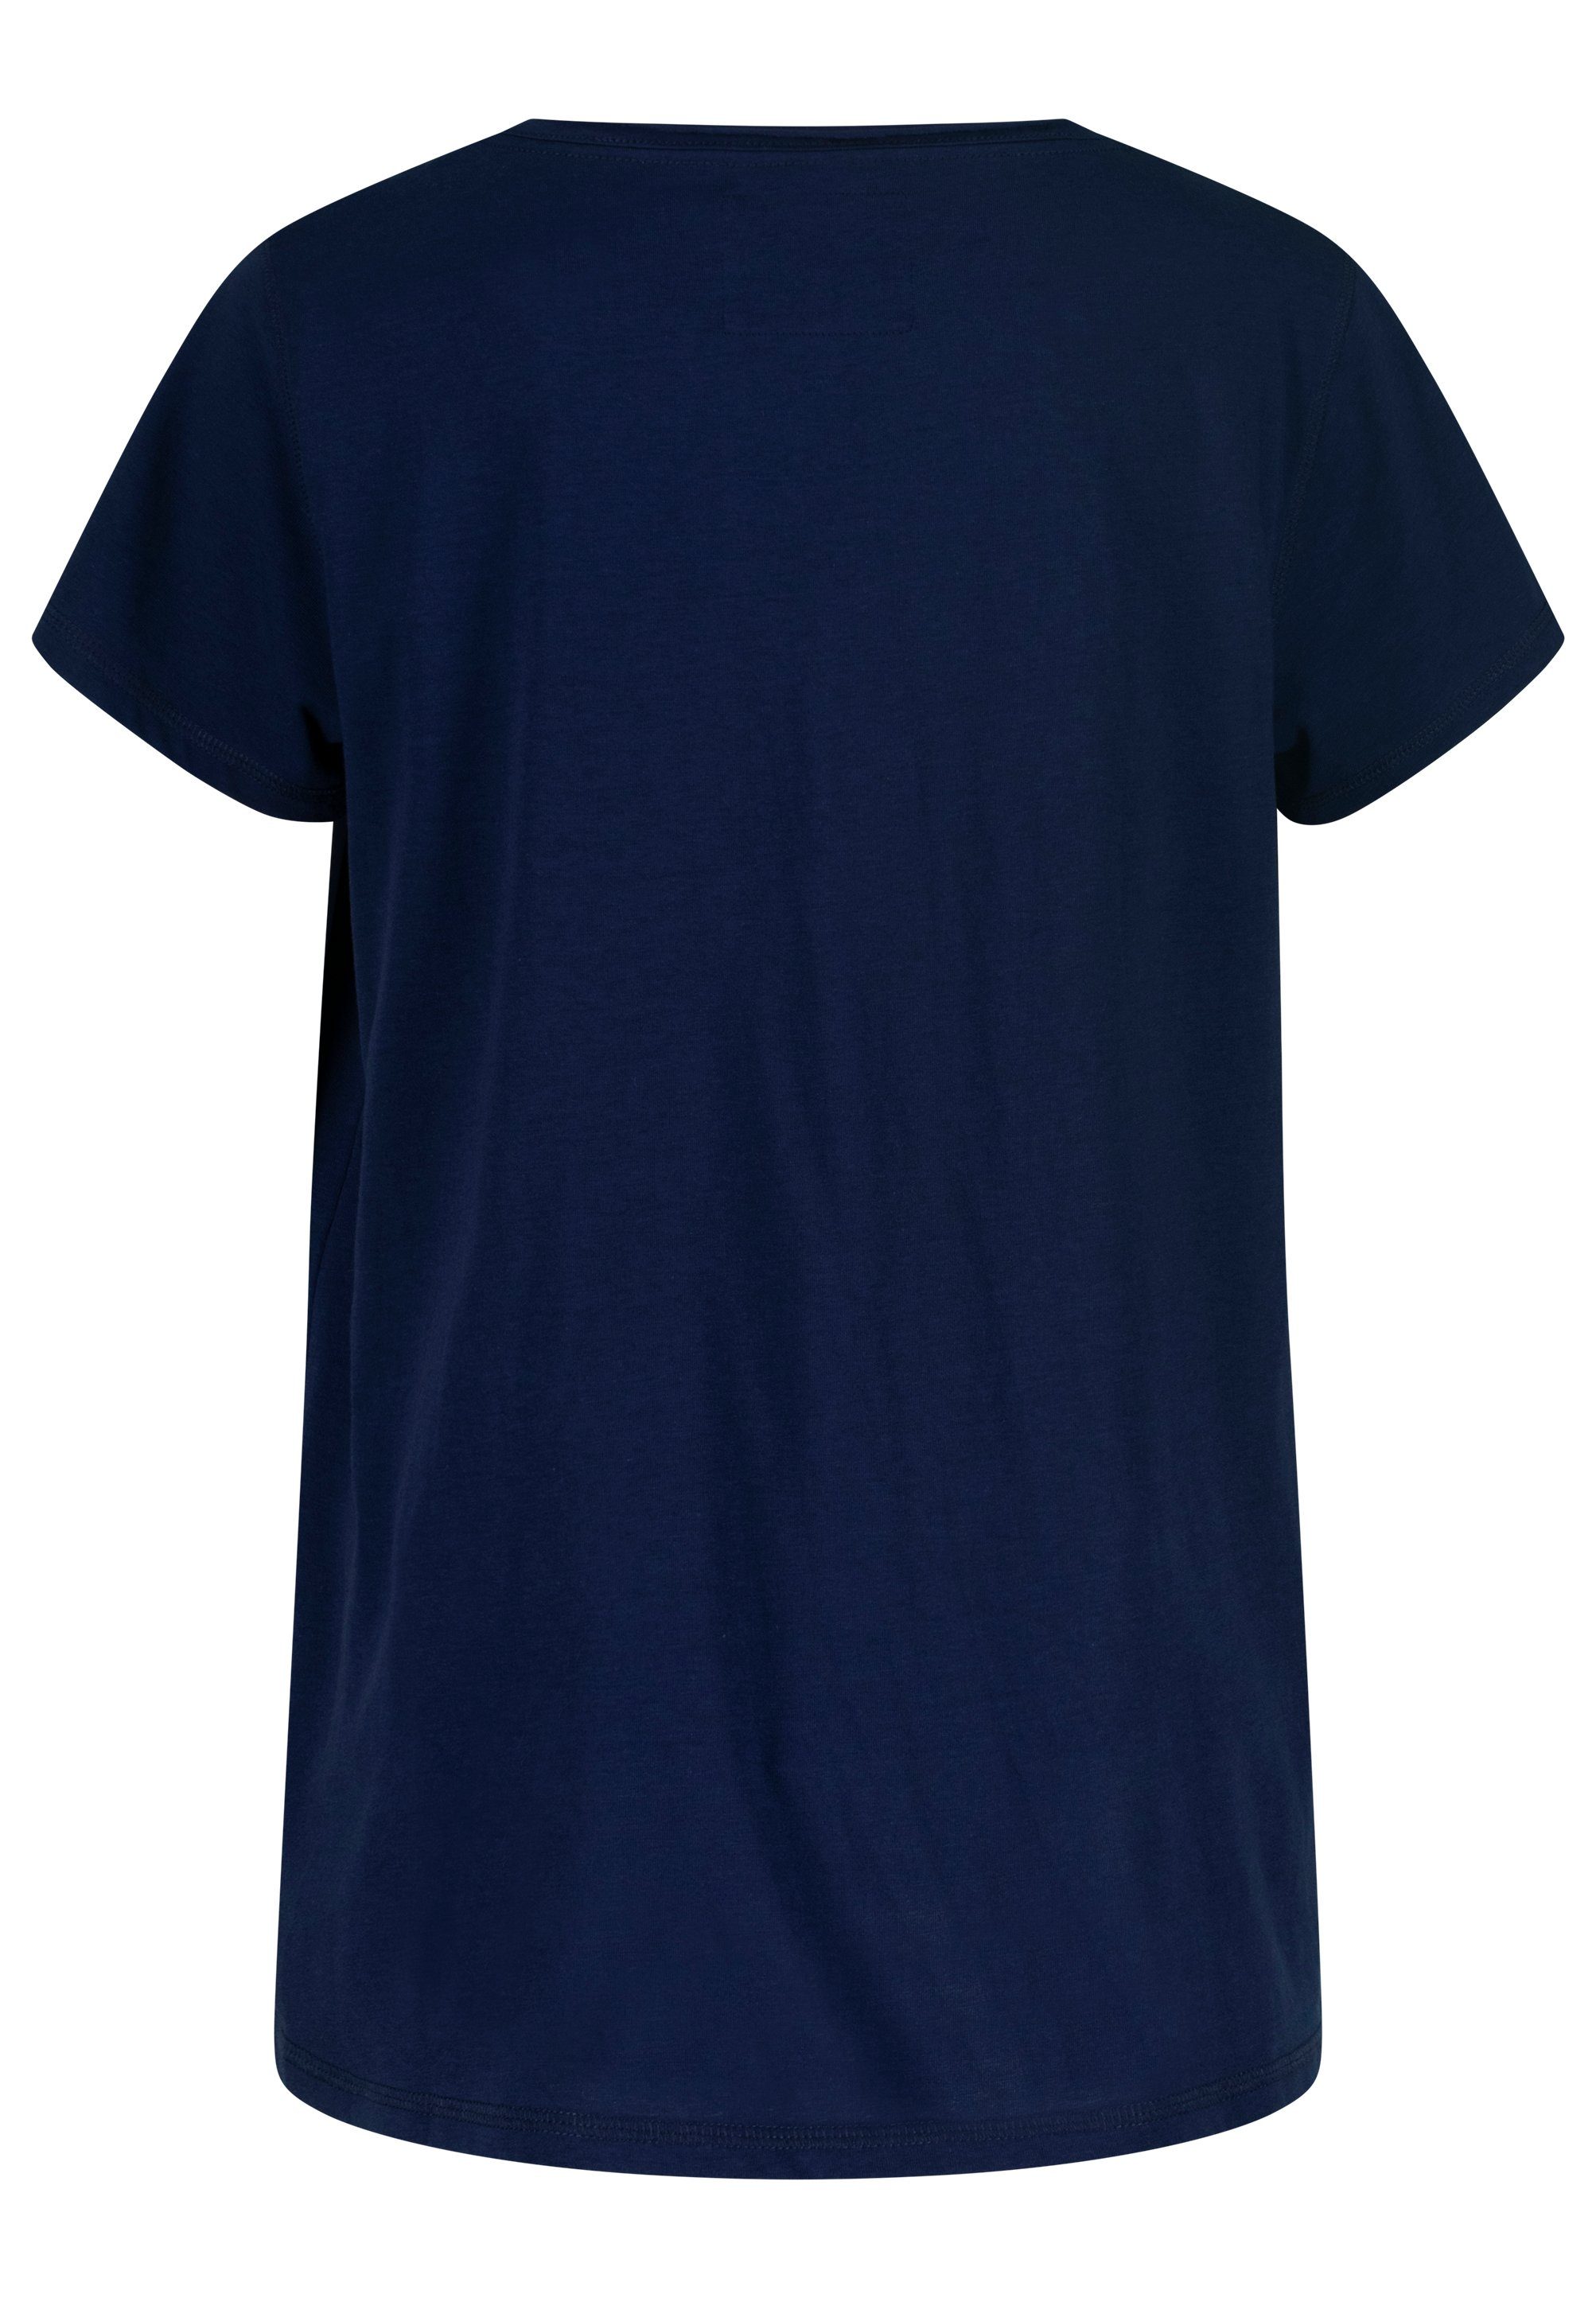 October T-Shirt mit dekorativen Knöpfen dunkelblau